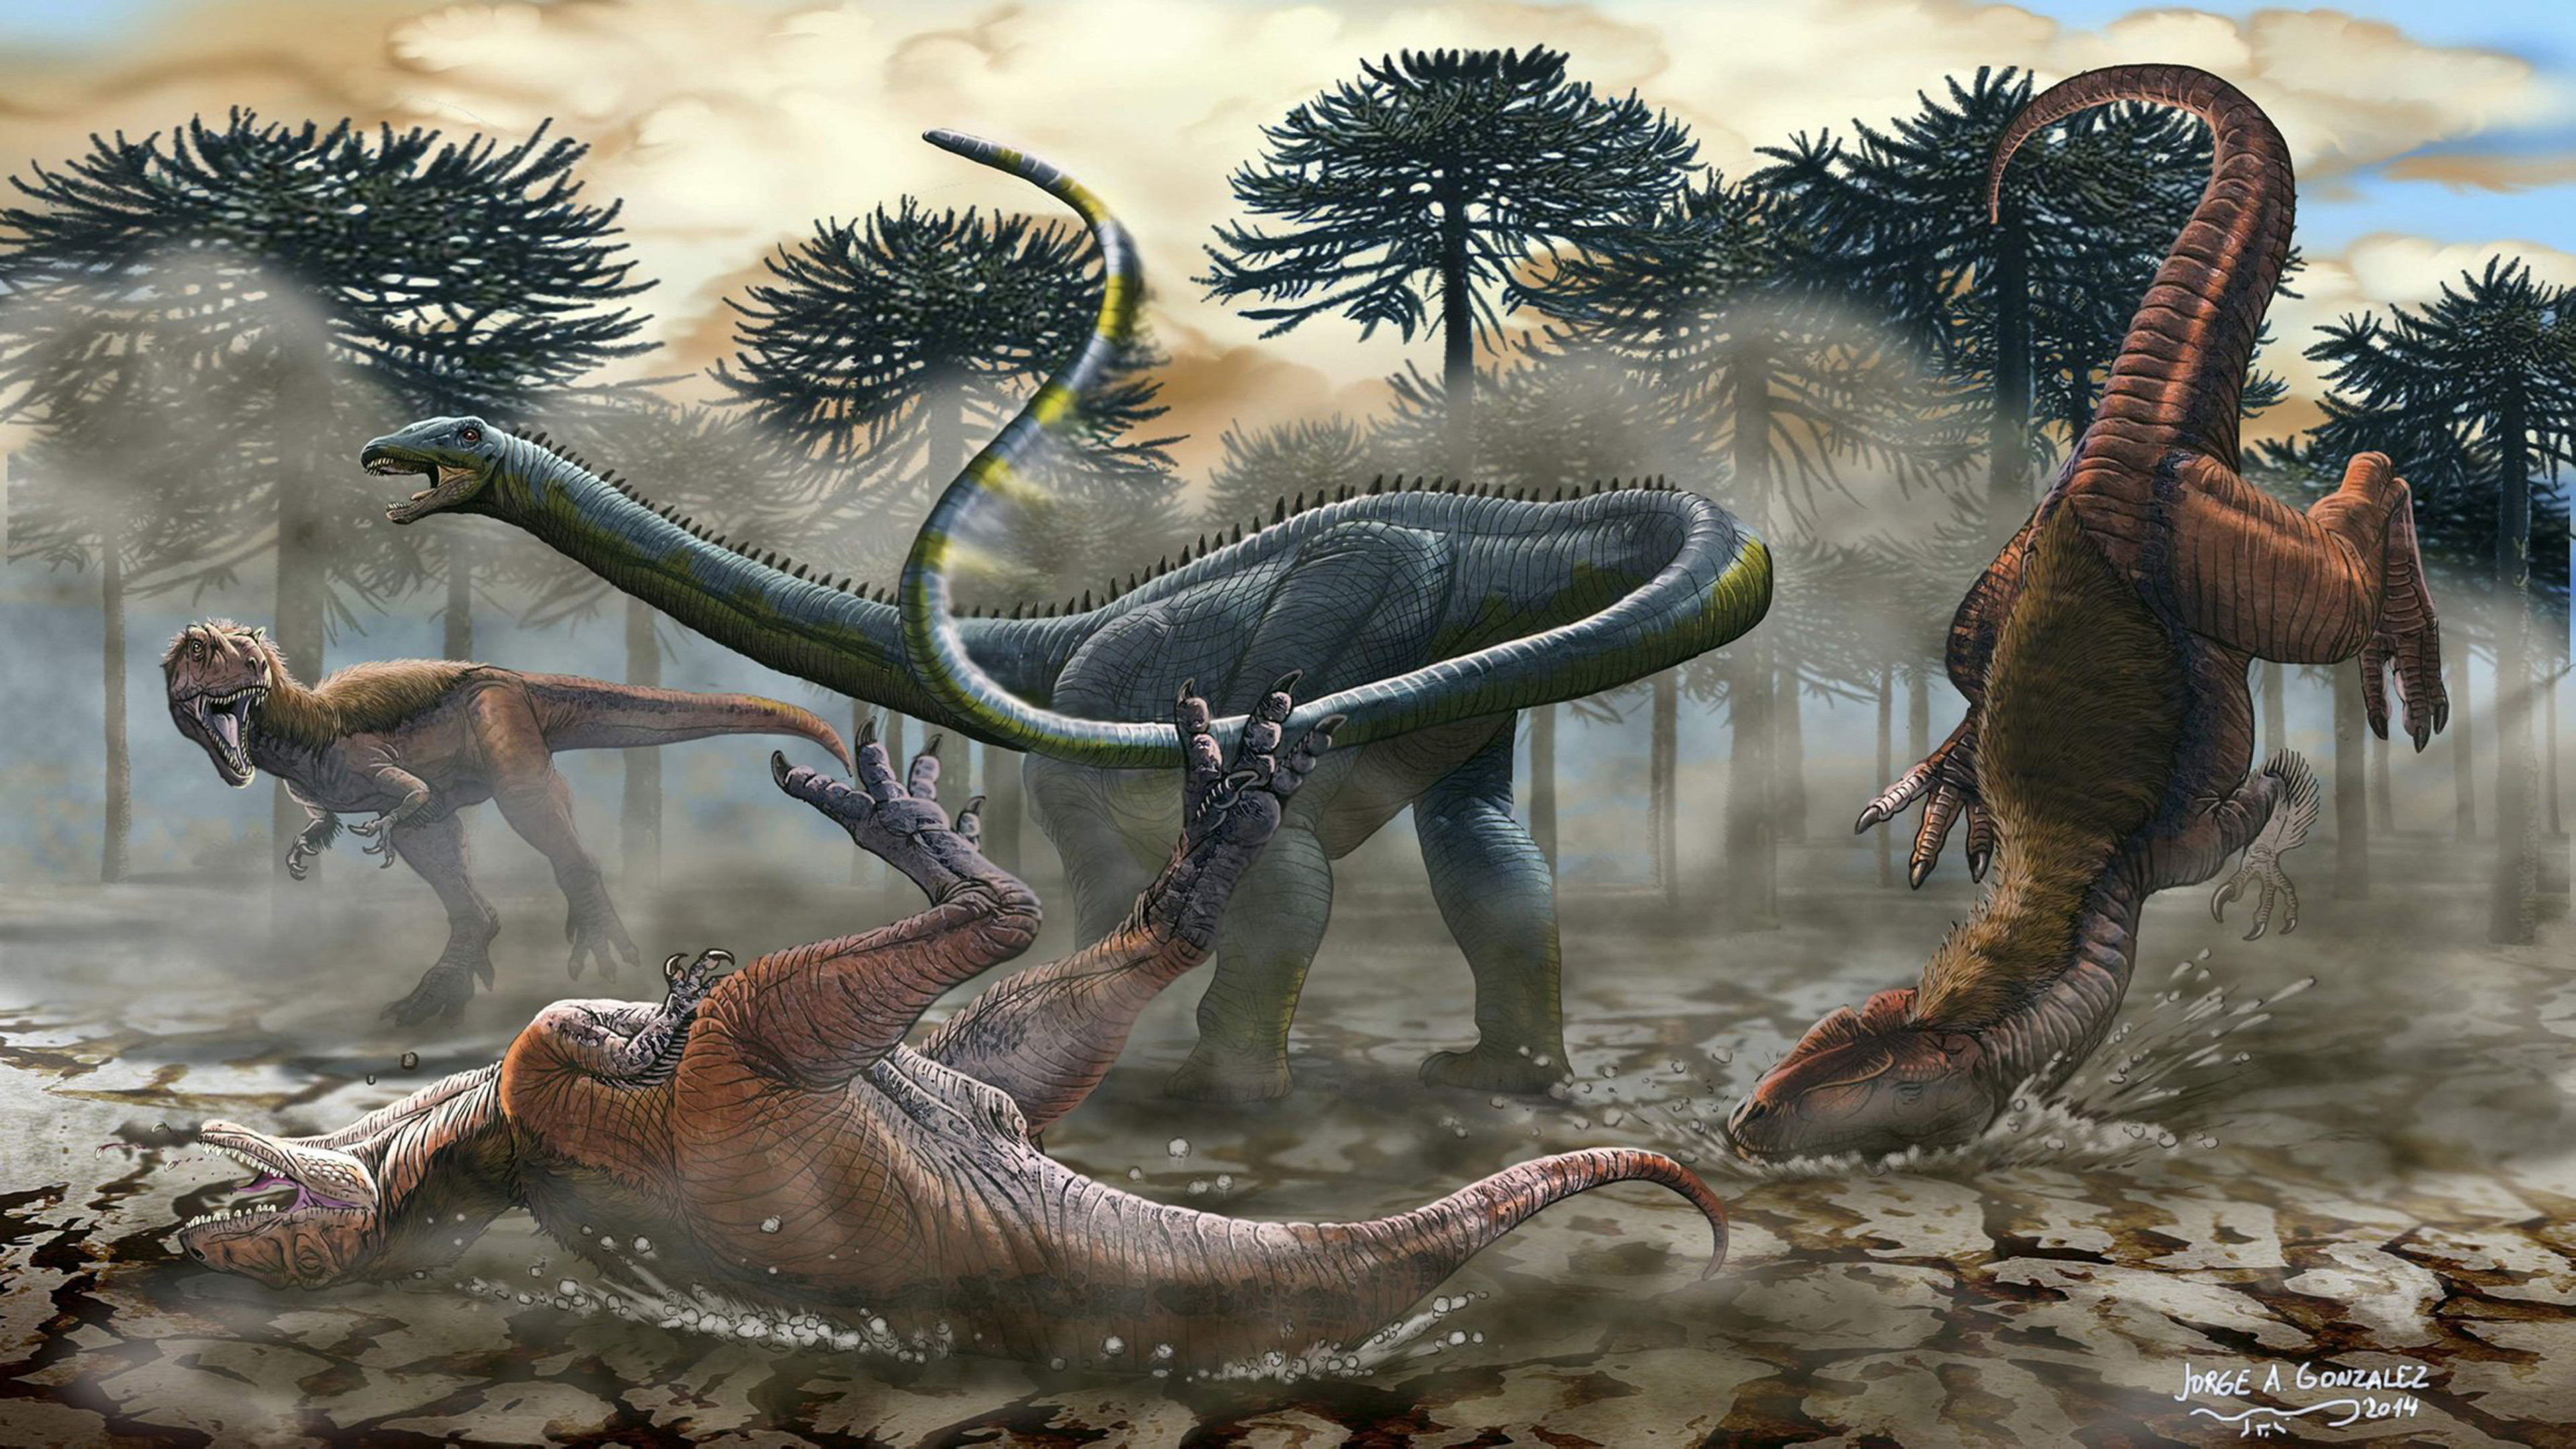 Древние времена динозавров